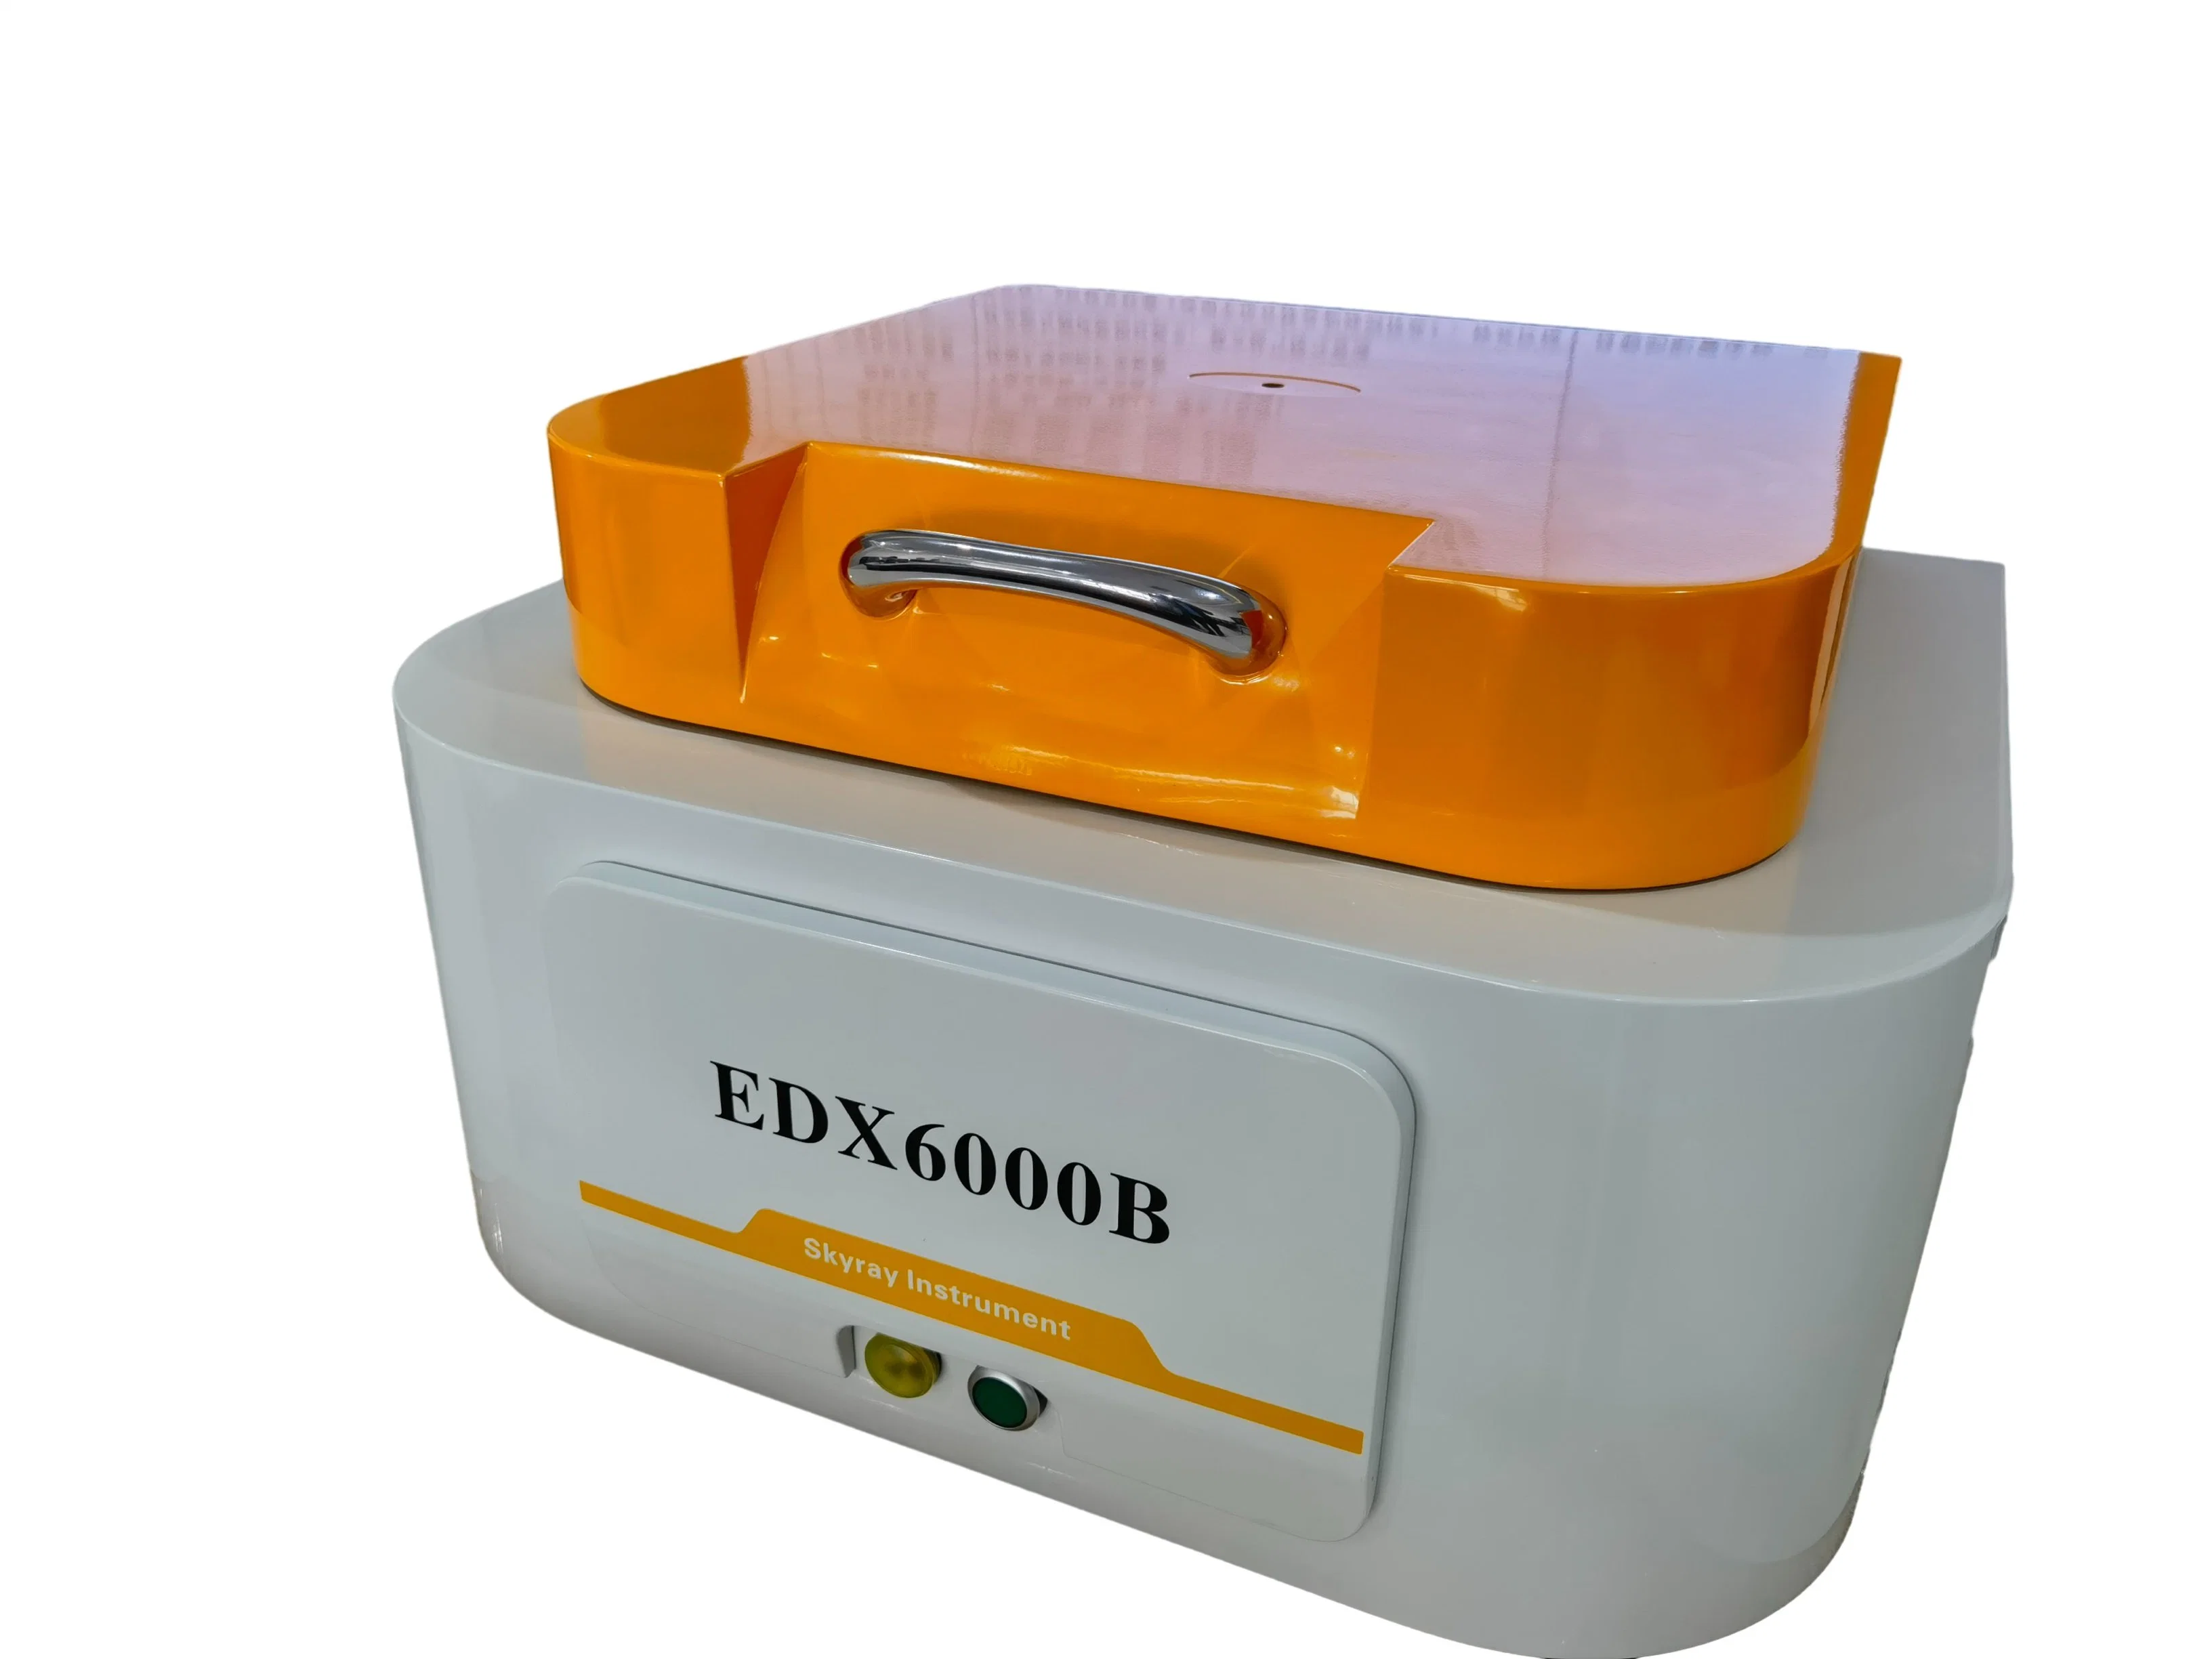 Espectrómetro - Analisador de elementos completos Edx6000b da Skyray Instrument